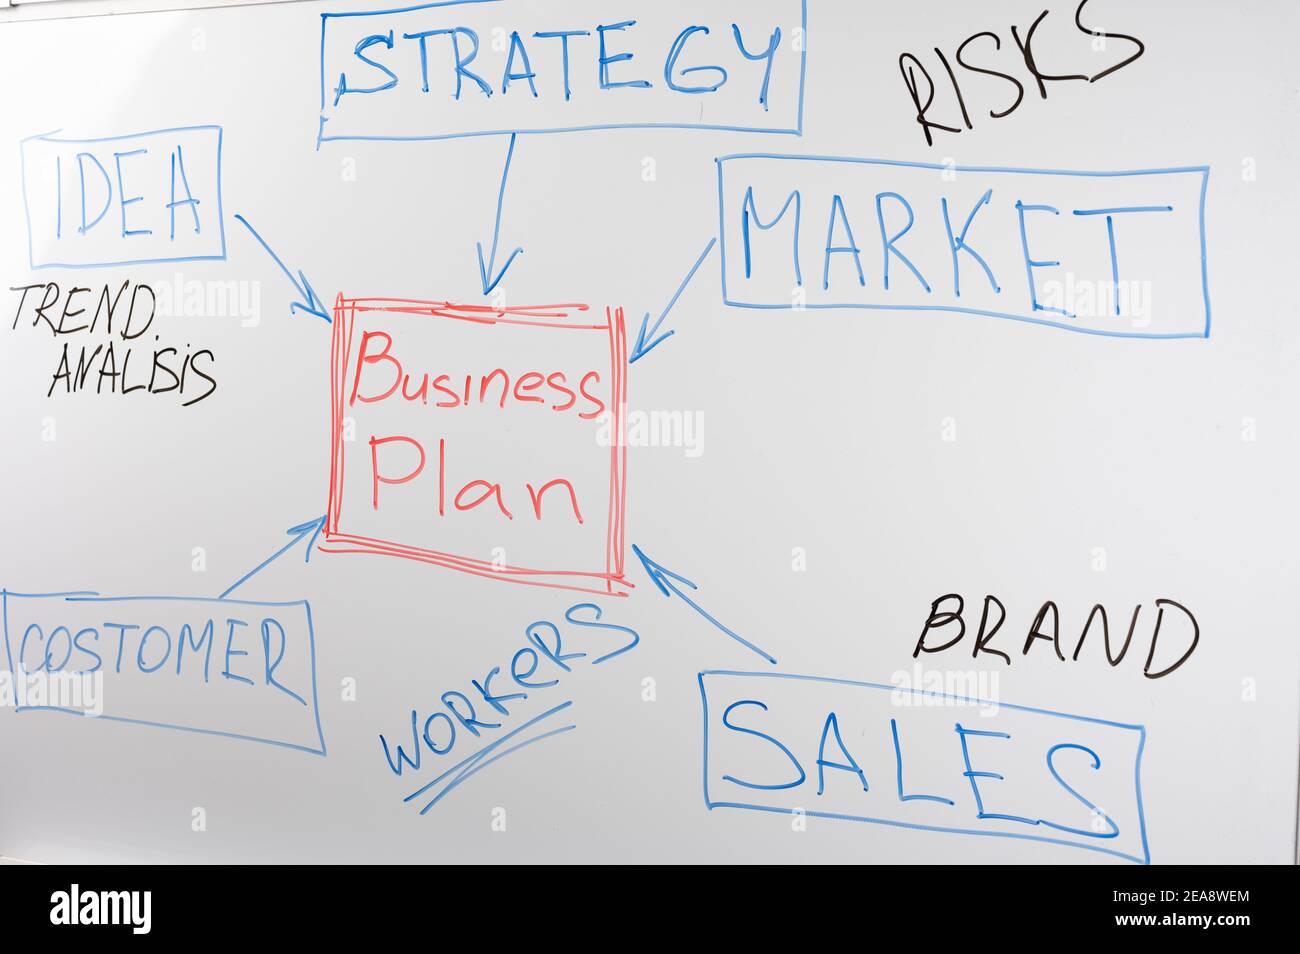 Business-Plan-Block-Diagramm auf Whiteboard. Business-Strategie-Konzept. White-Marker-Board mit gezeichneten Business-Plan-Elemente. Stockfoto